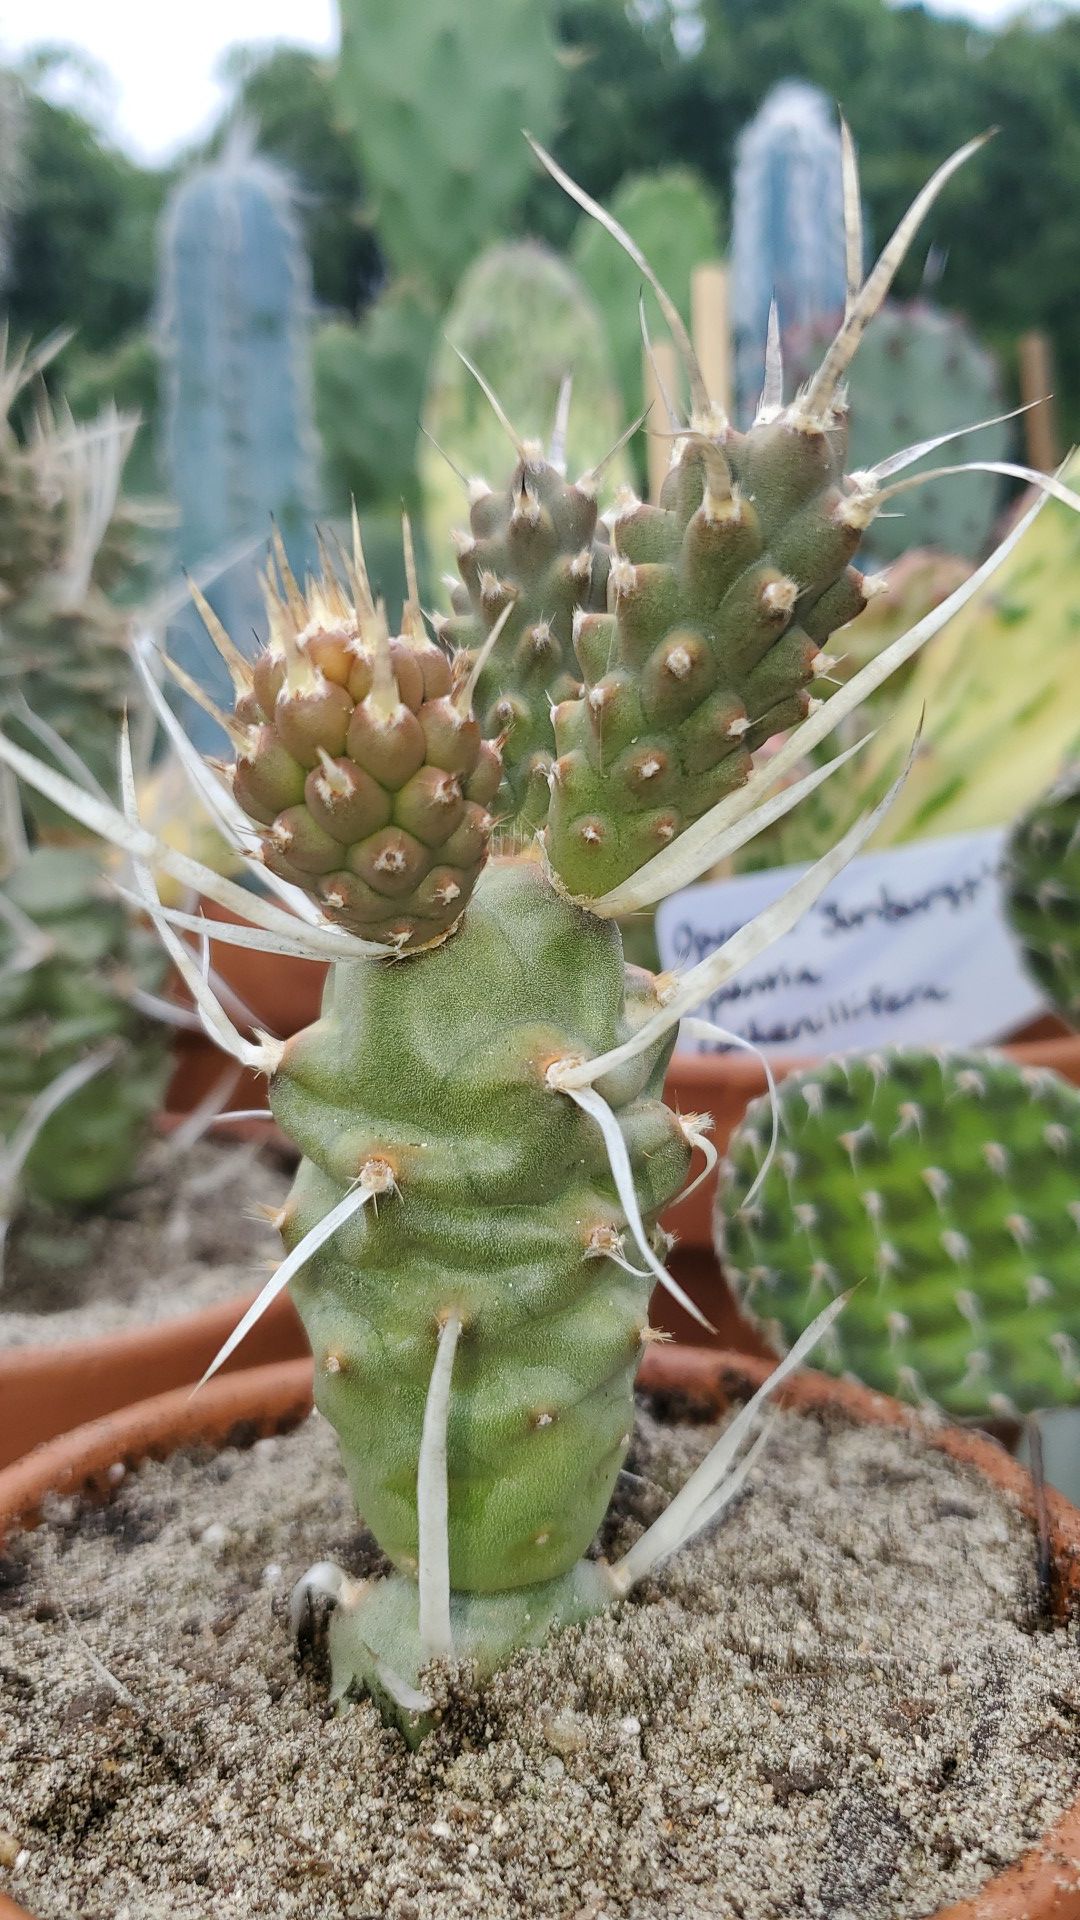 Paper Spine Cactus (Tephrocactus articulatus papyracanthus)